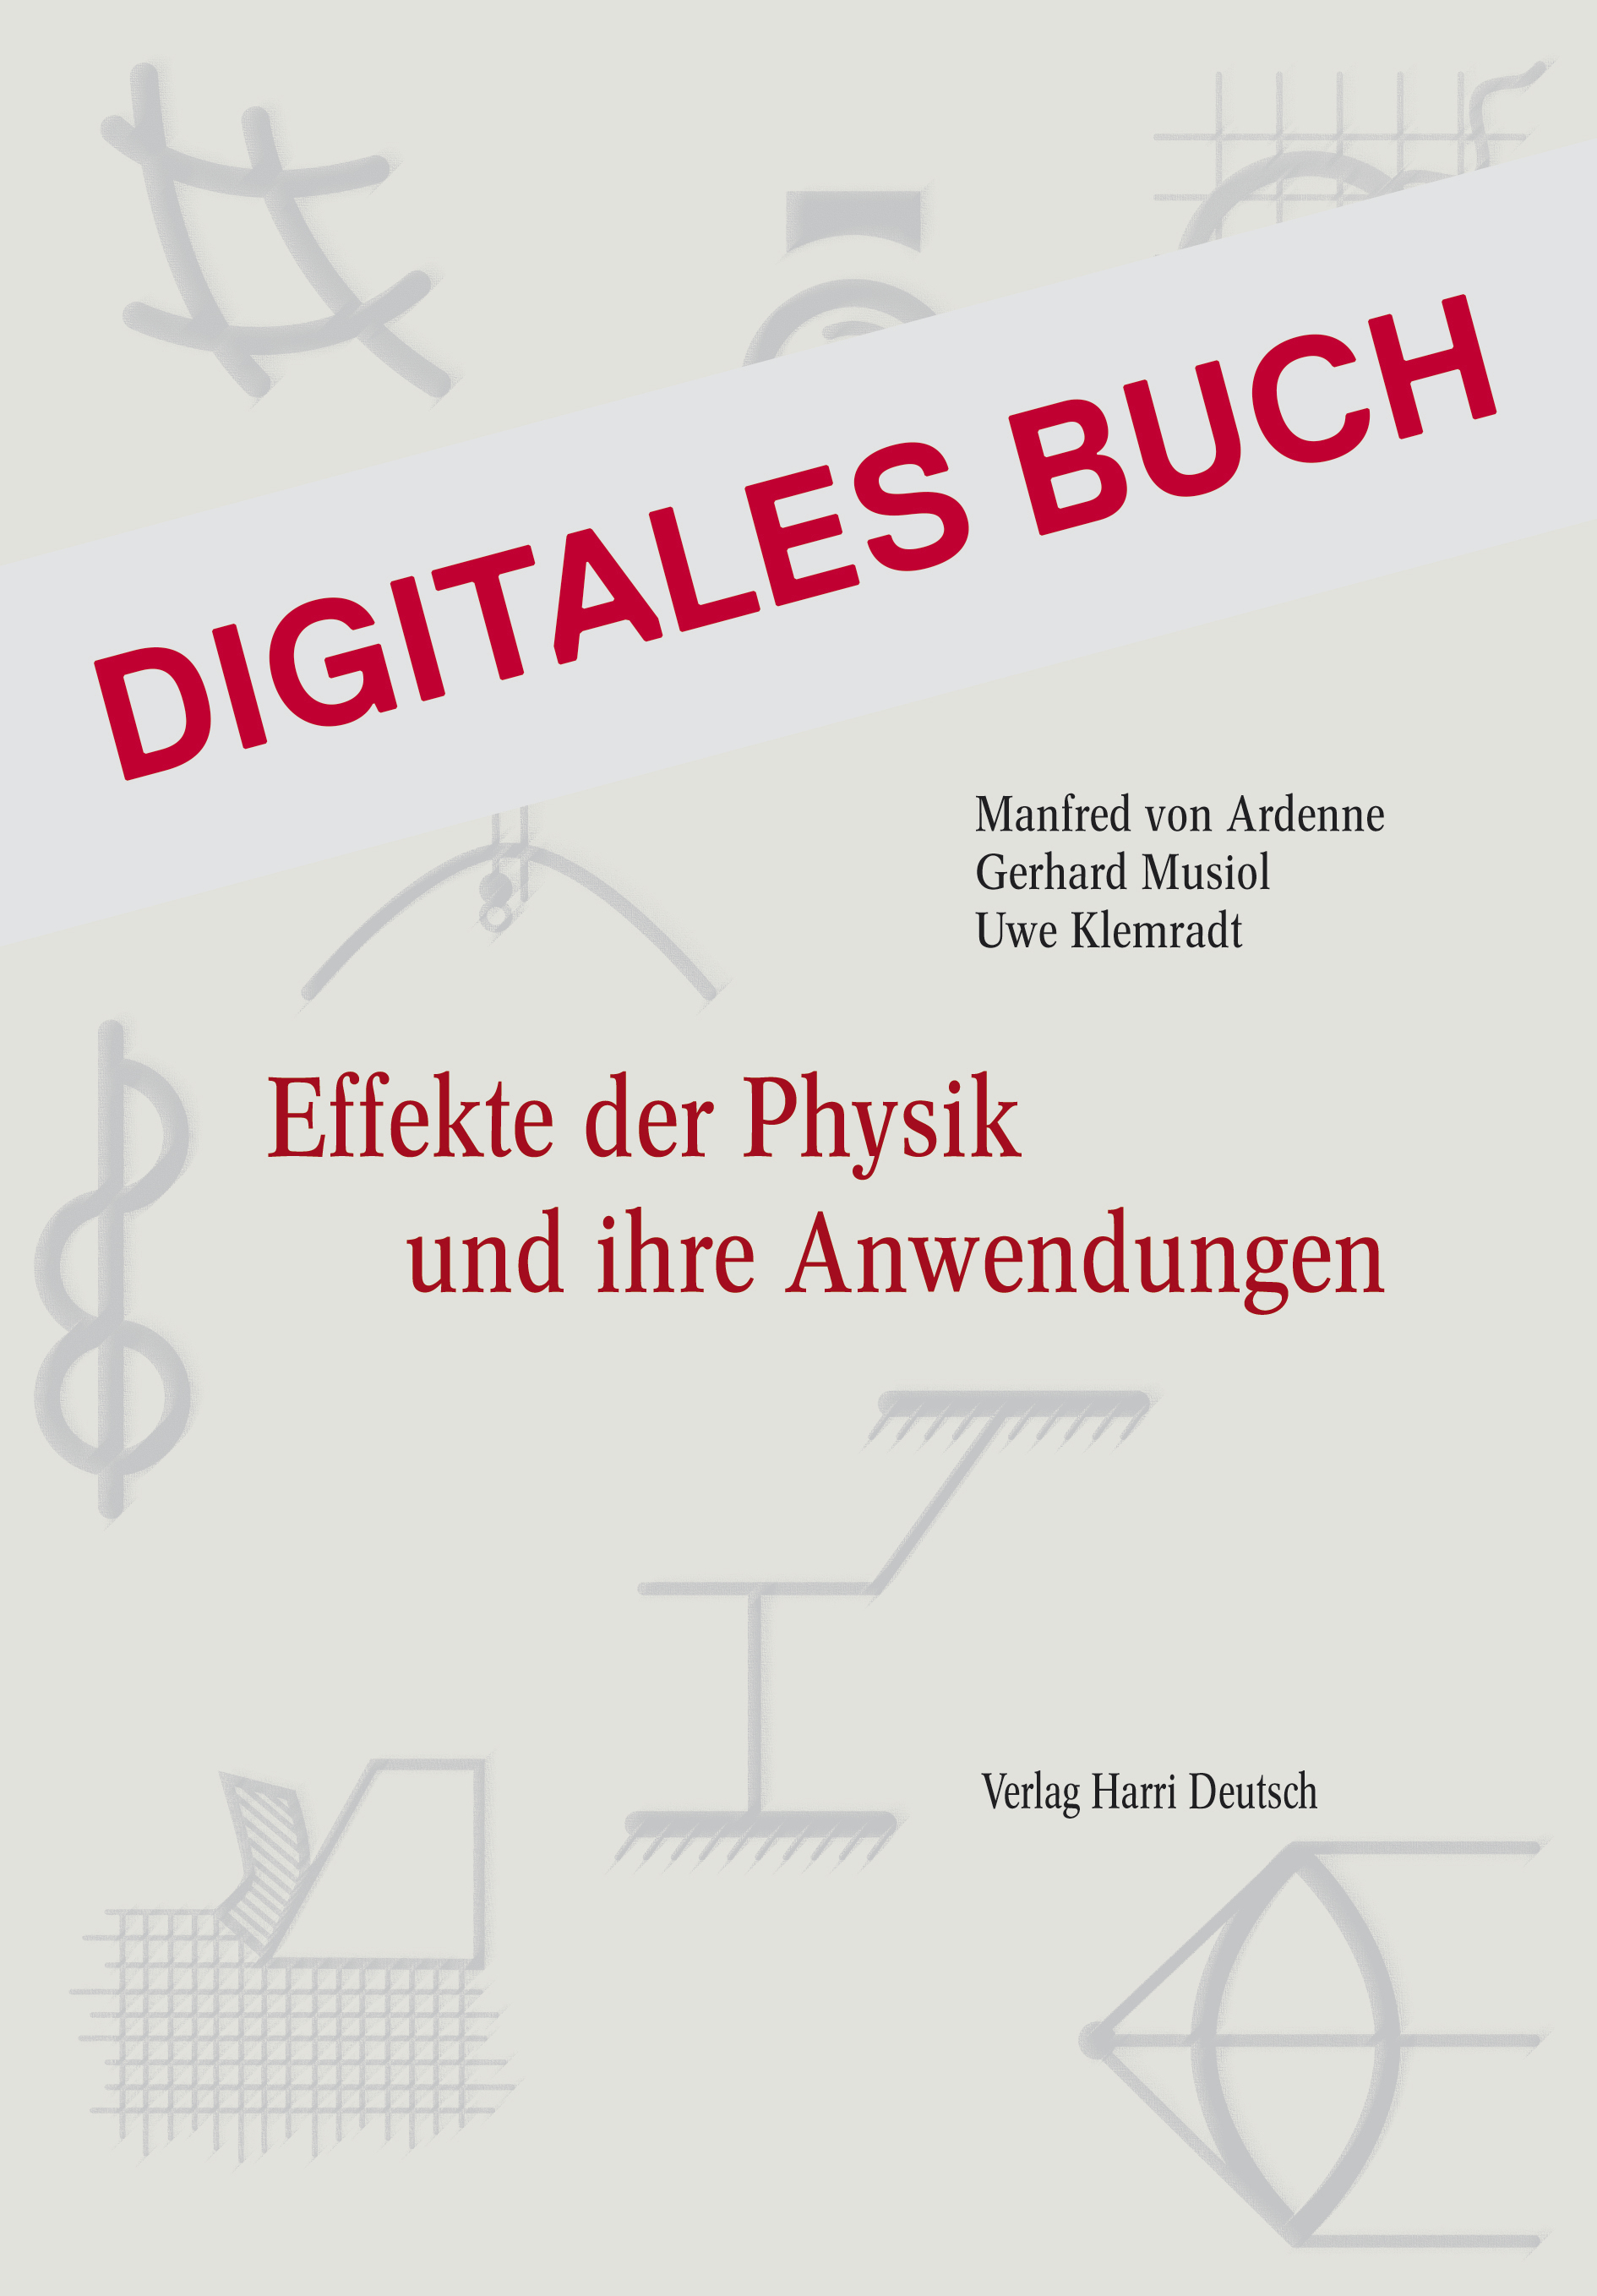 Effekte der Physik und ihre Anwendungen - Digitales Buch